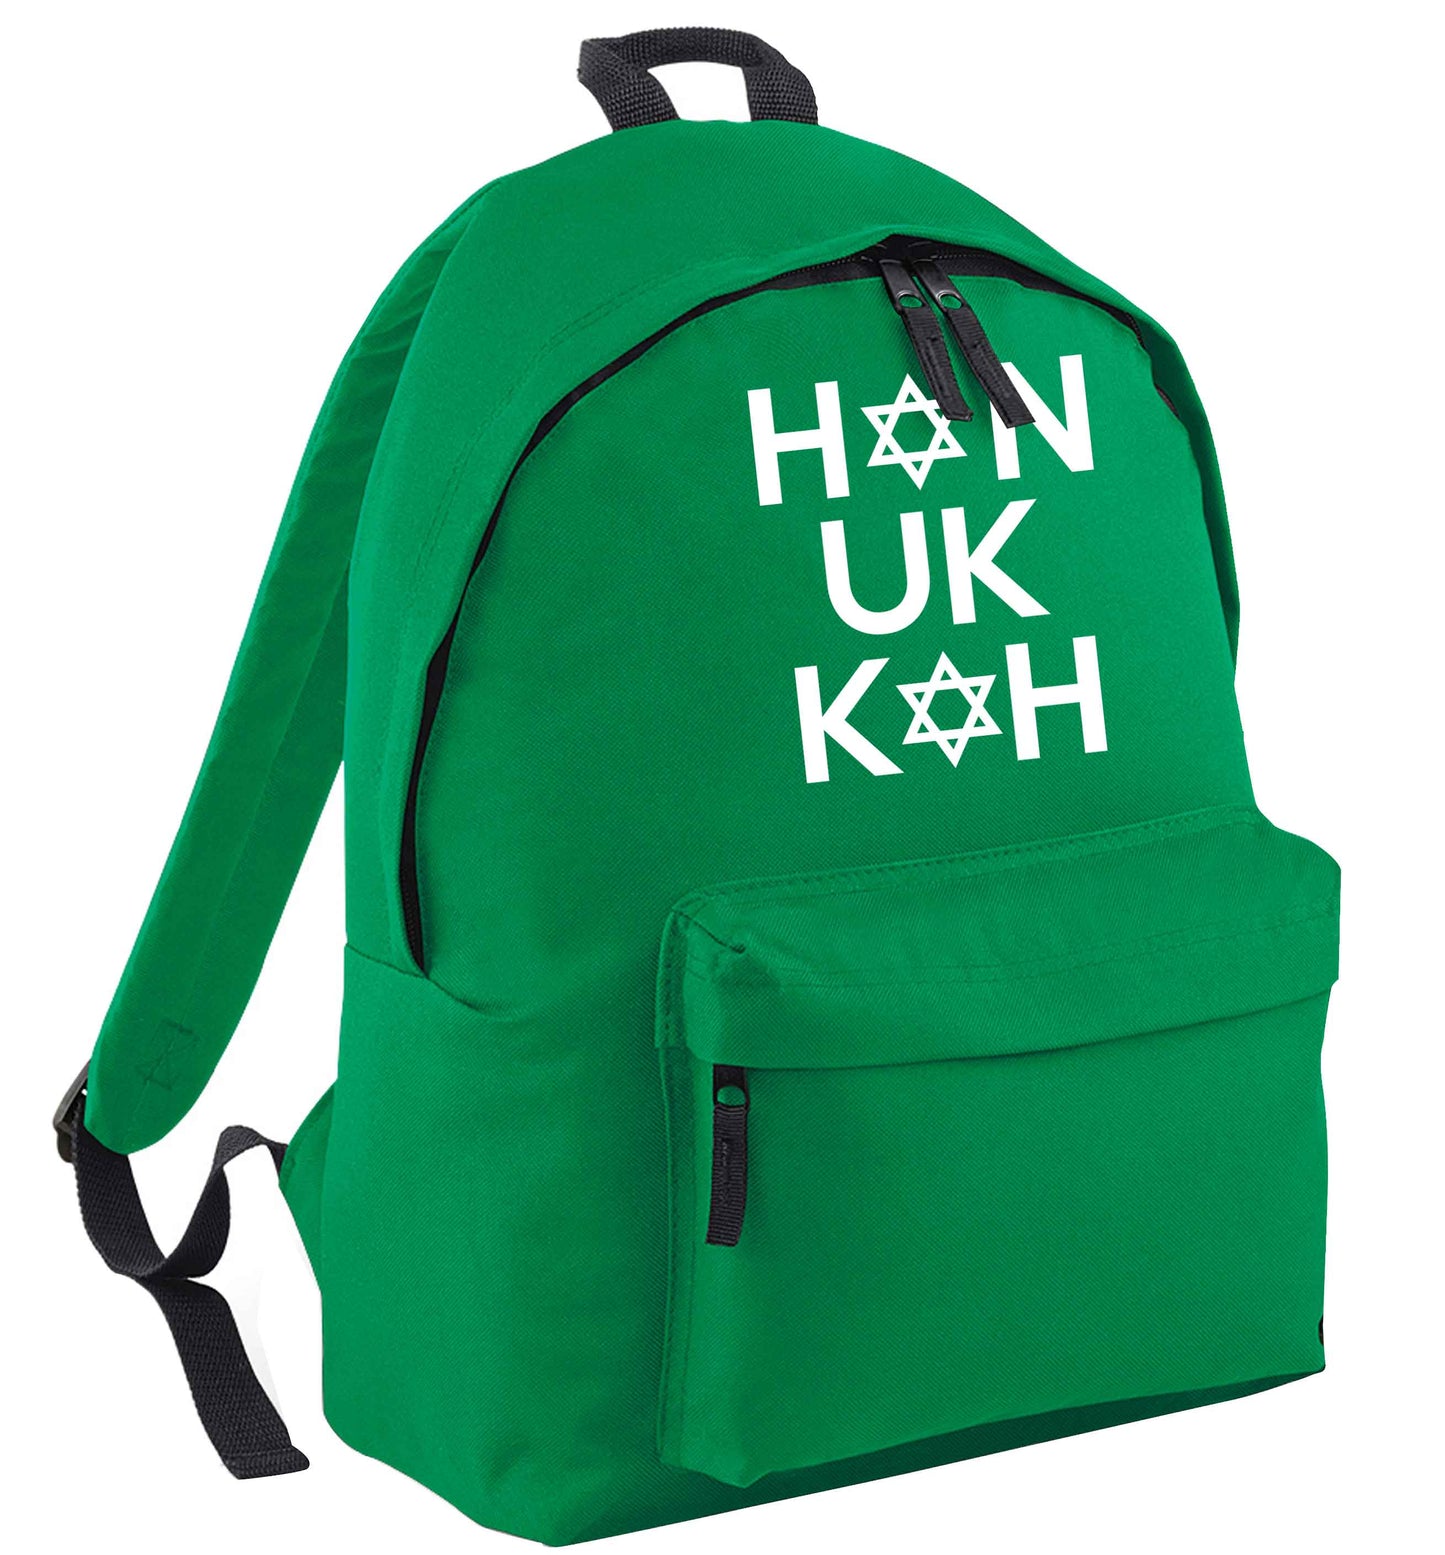 Han uk kah  Hanukkah star of david green adults backpack